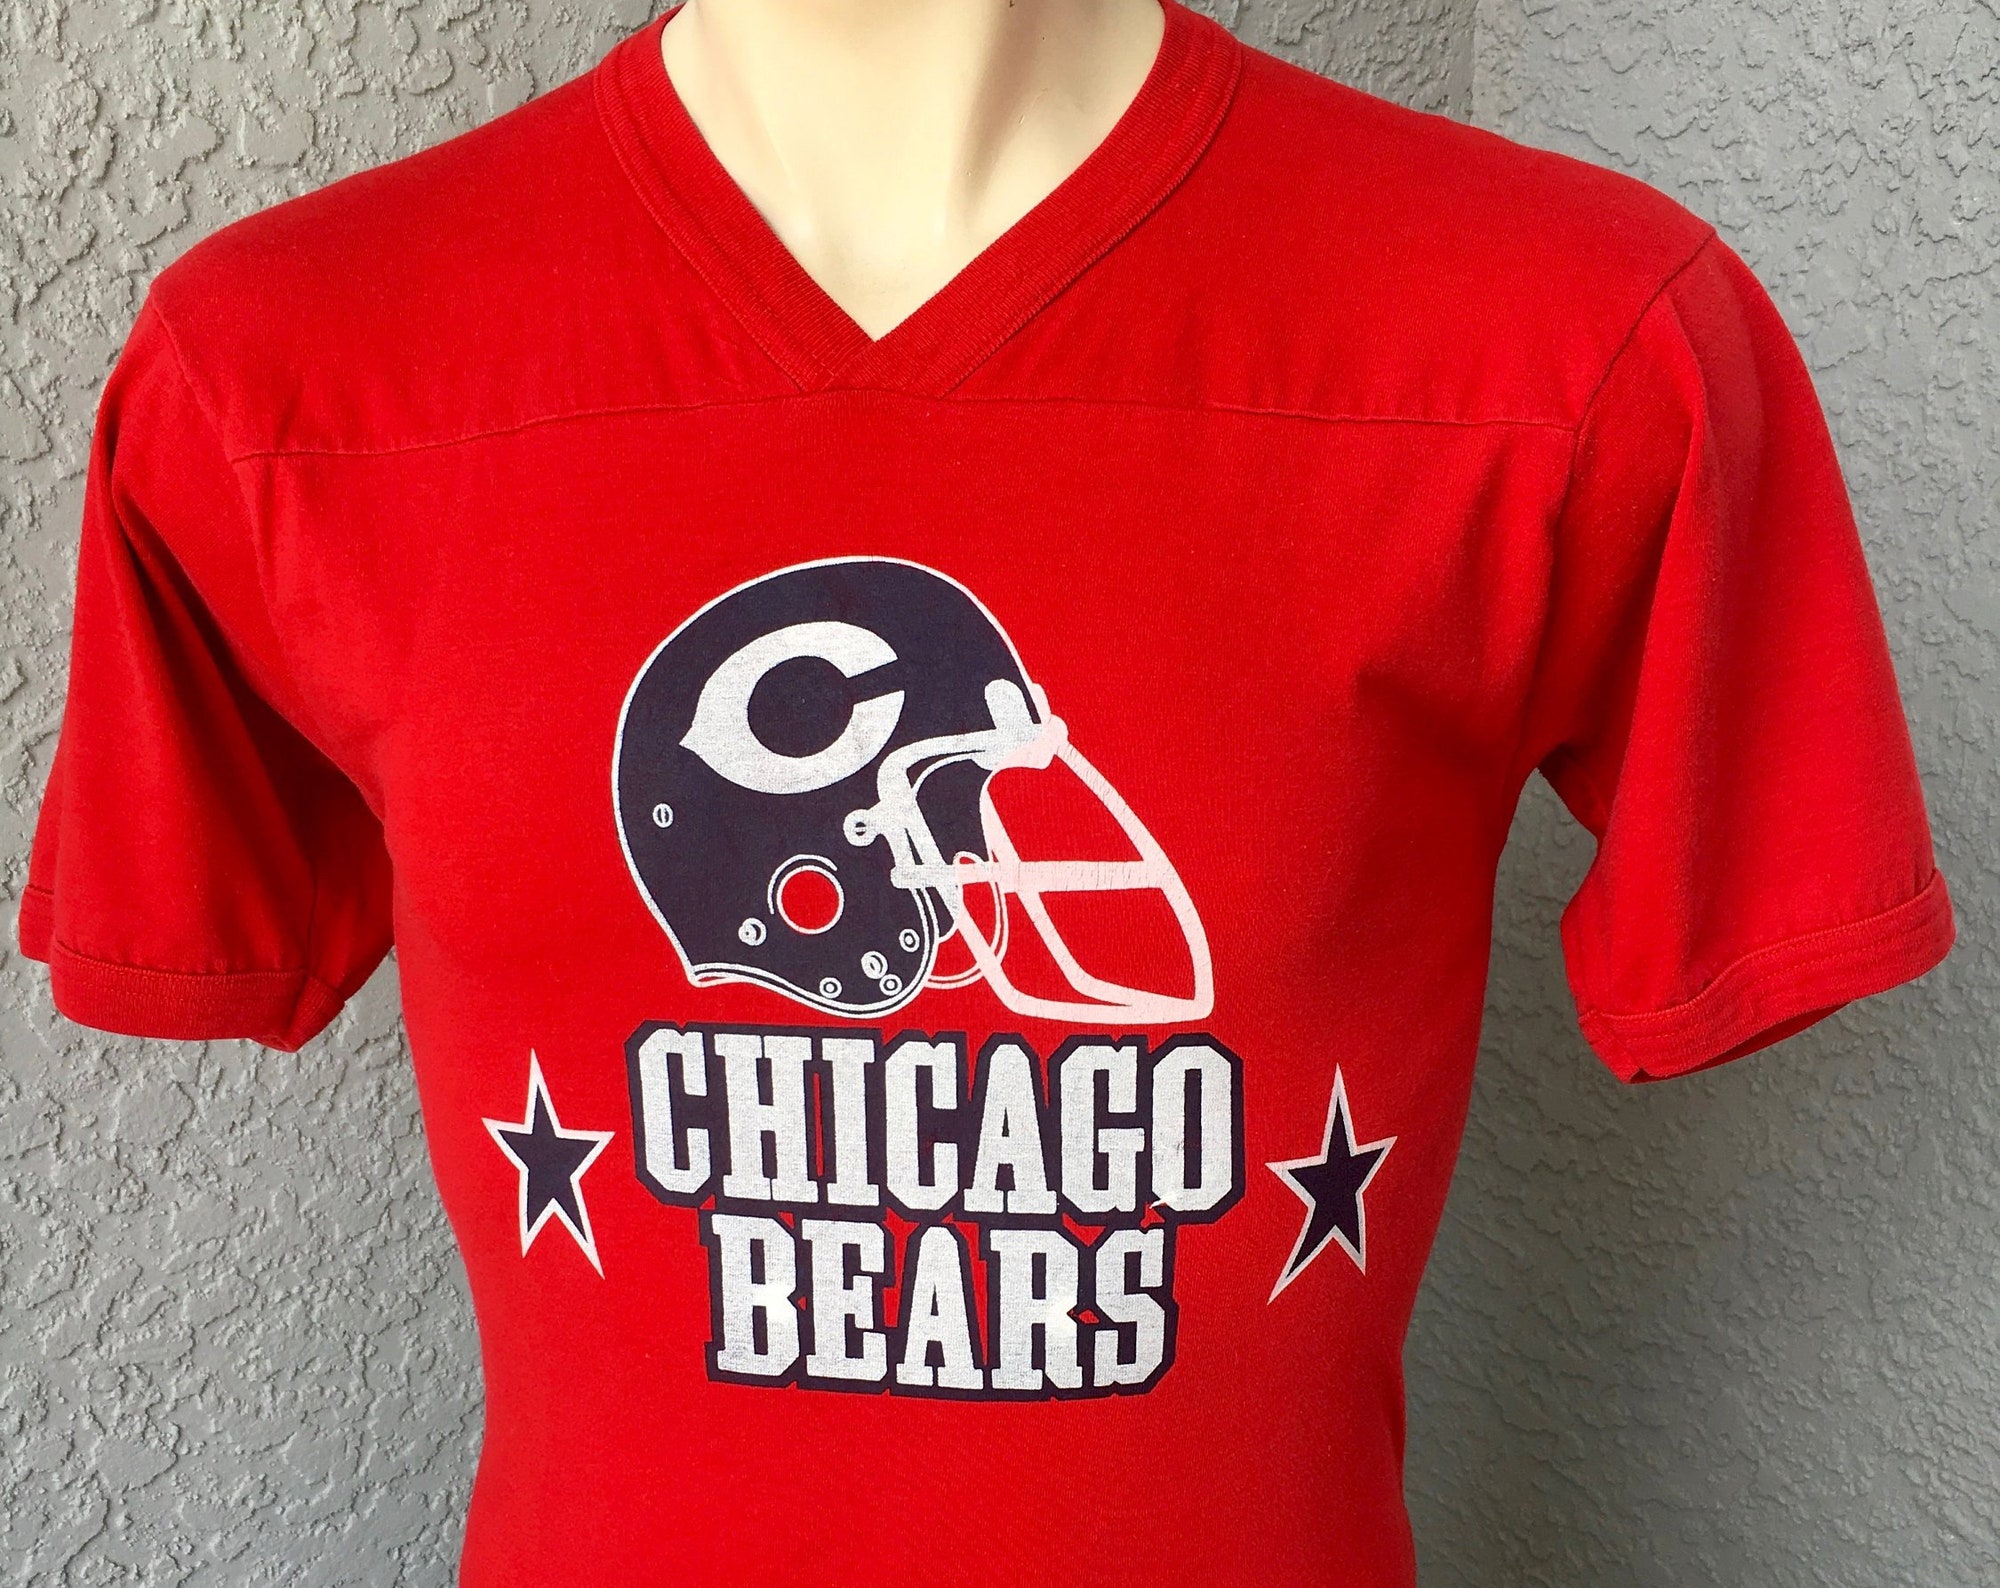 Discover Chicago Bears 1980s vintage vneck t-shirt